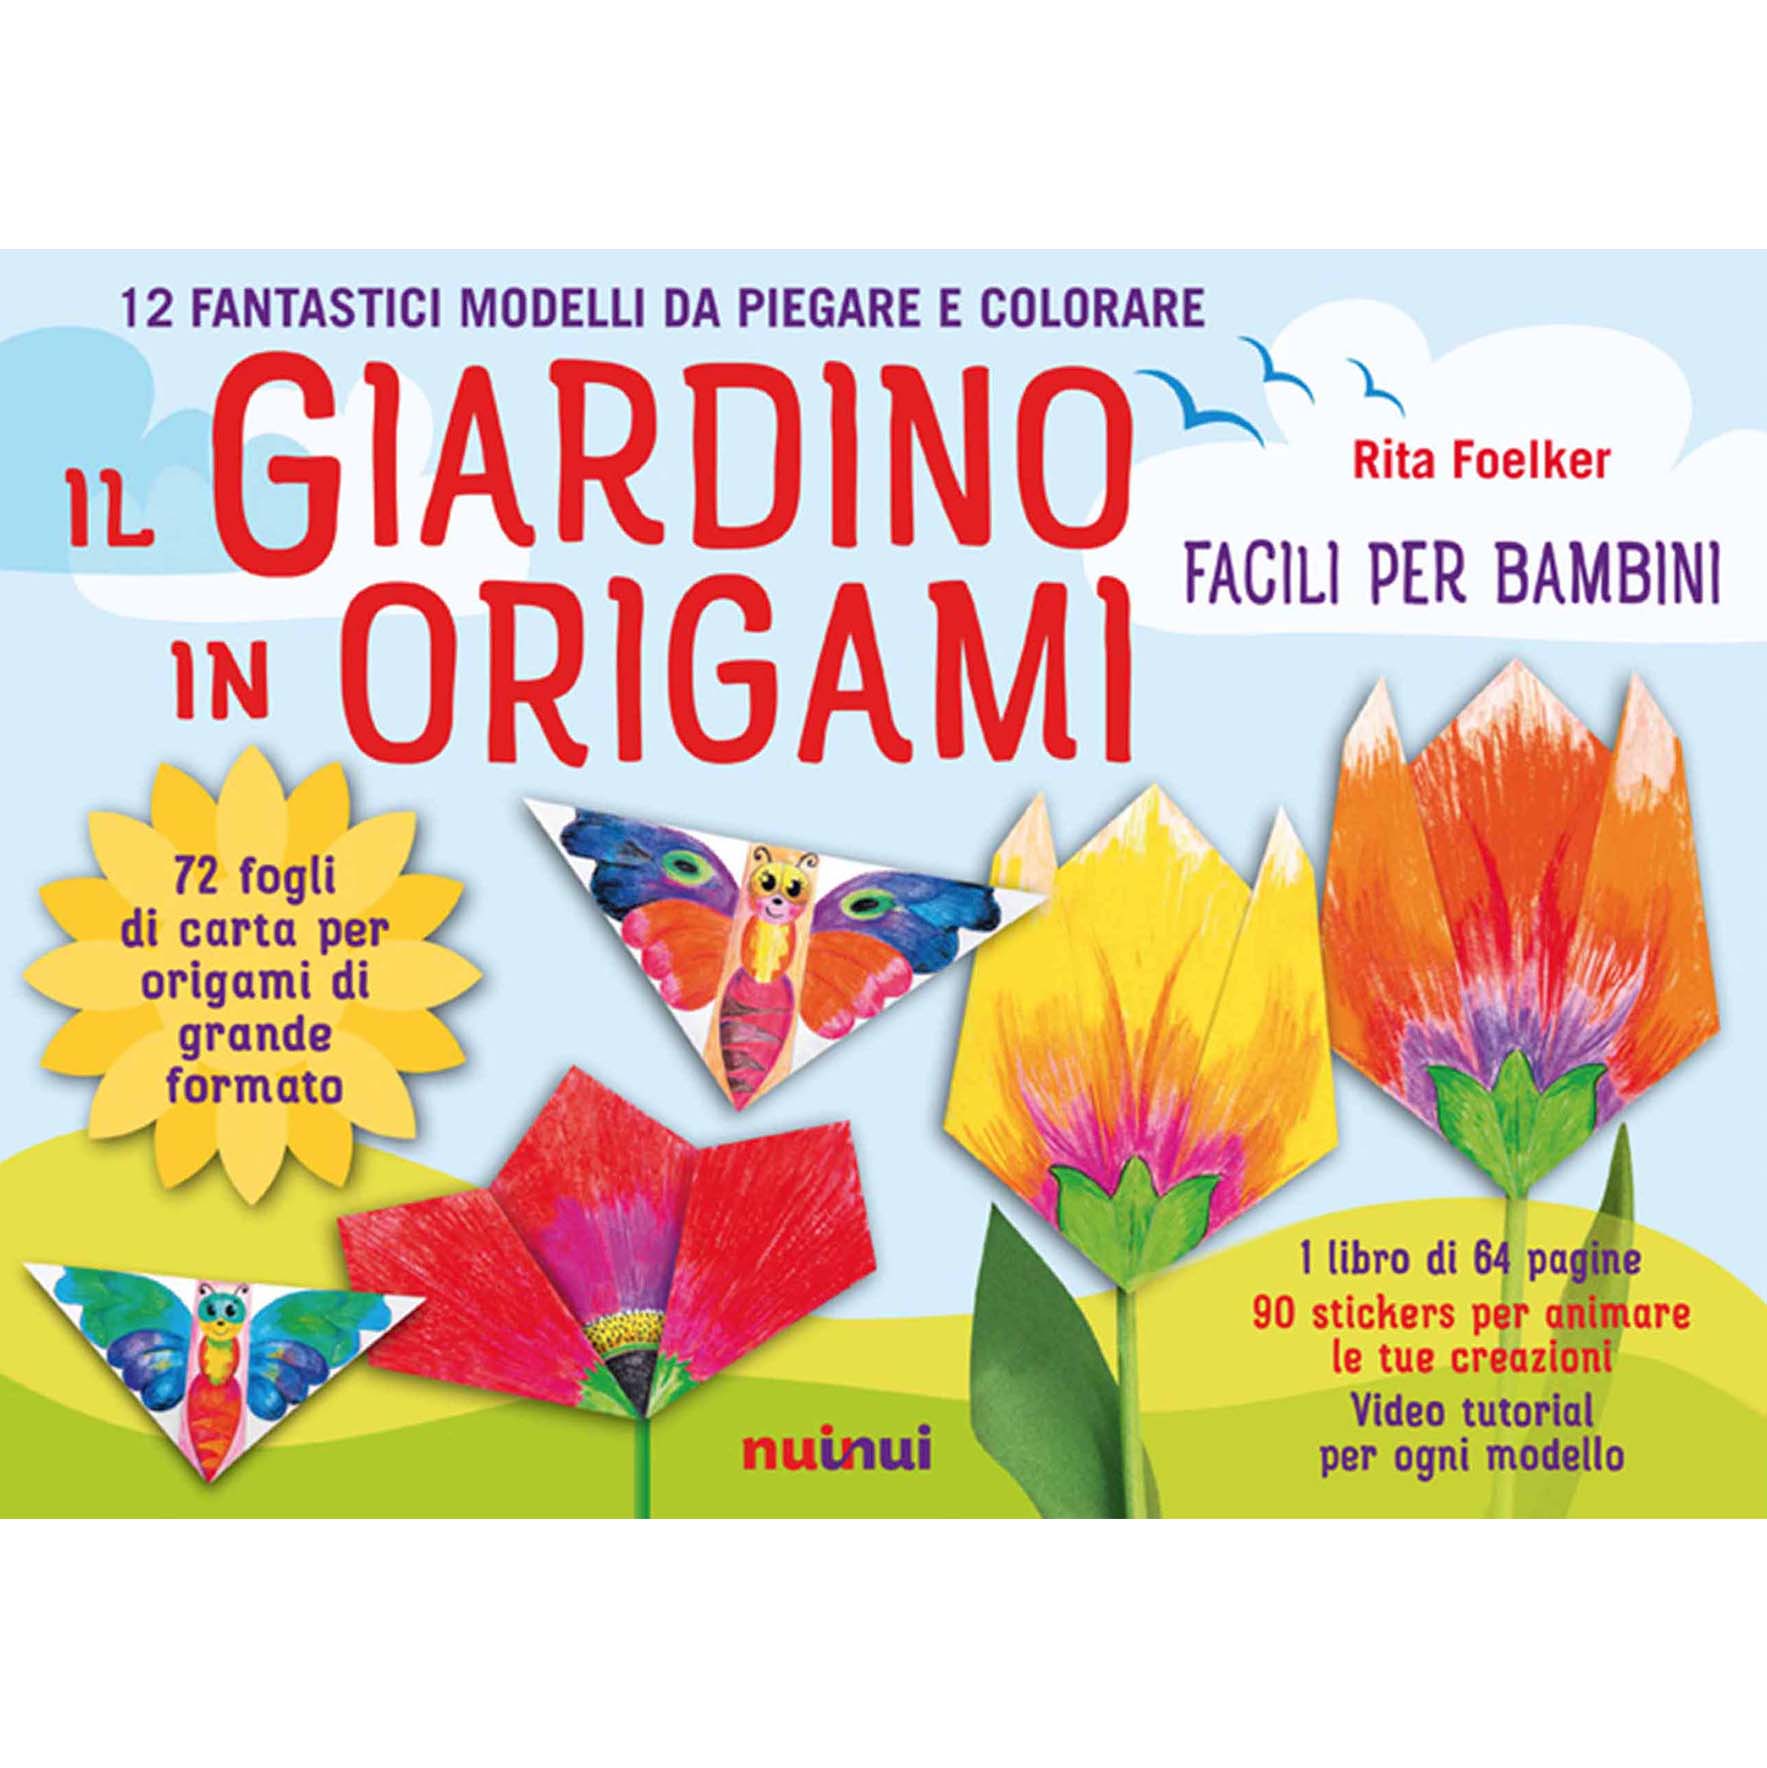 Il giardino in origami - Facili per bambini